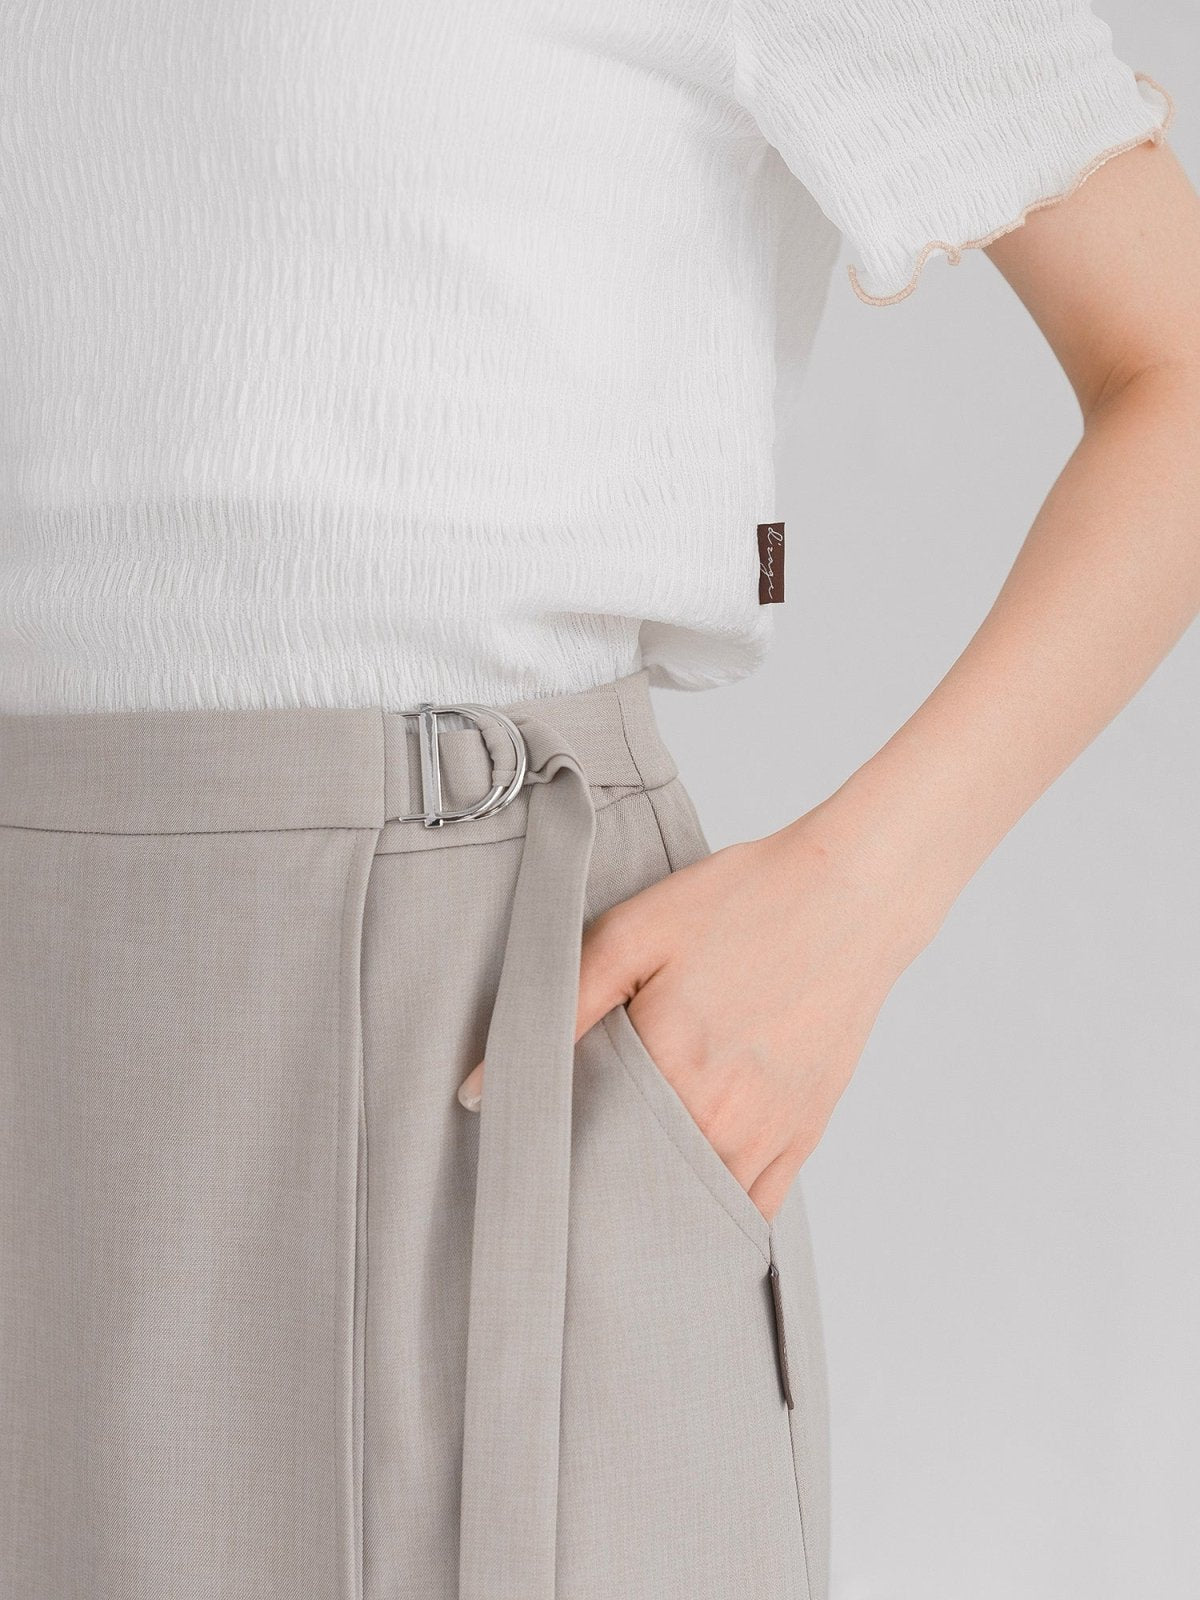 Yuna Buckled Wrap Midi Skirt - DAG-DD0341-23LightBeigeS - Beige - S - D'ZAGE Designs